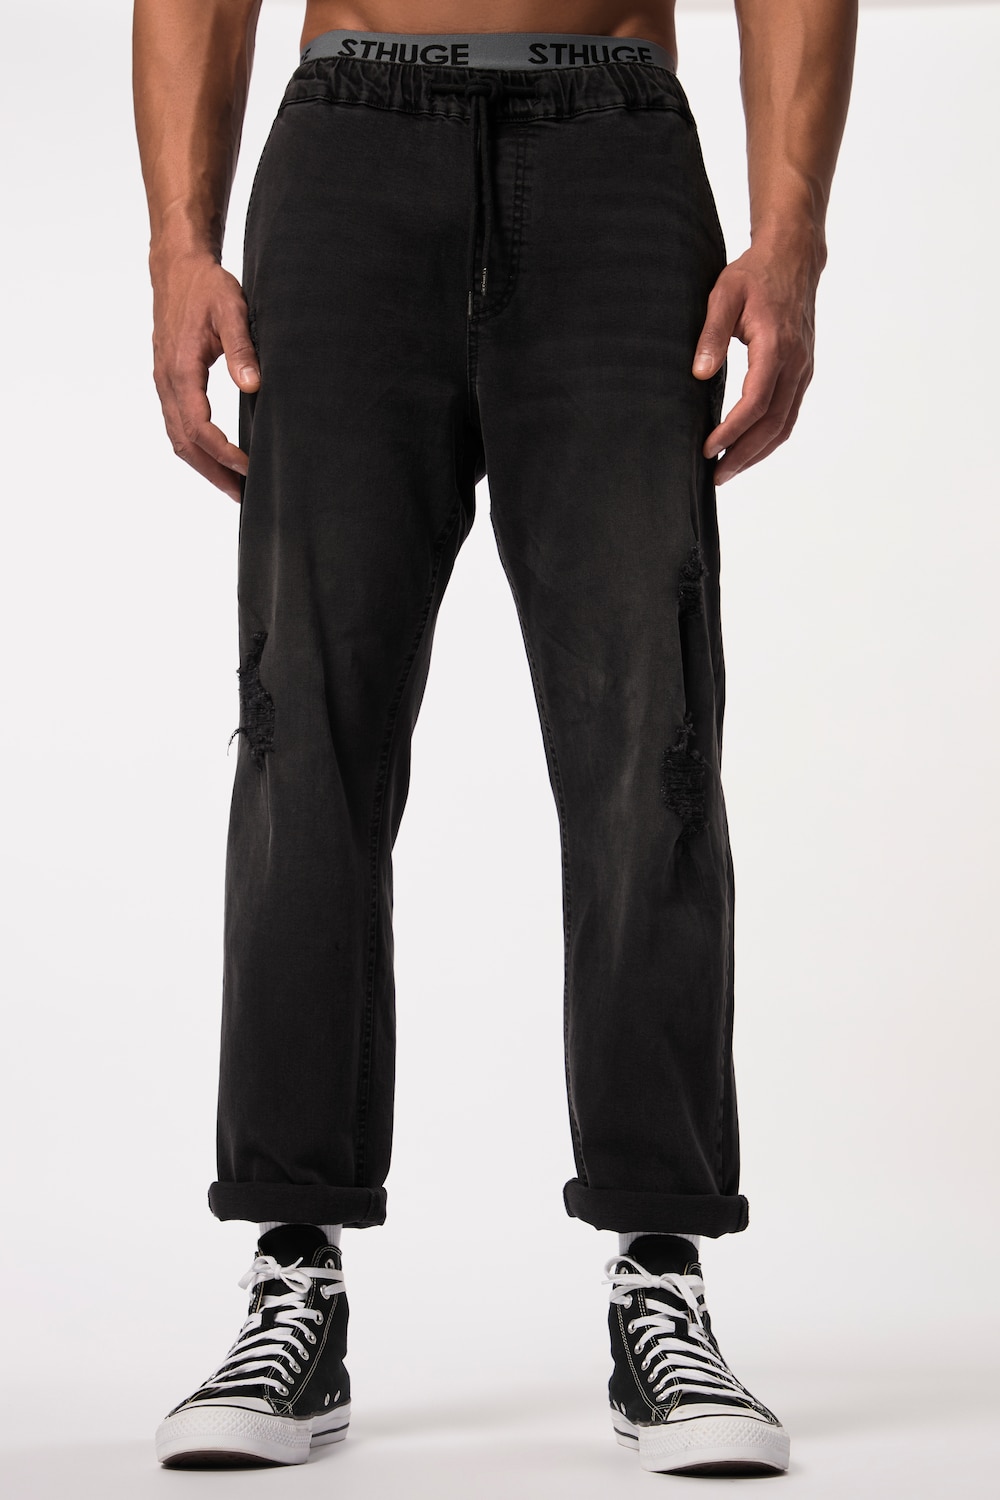 Grote Maten STHUGE jeans FLEXLASTIC®male, zwart, Maat: 4XL, Katoen, STHUGE